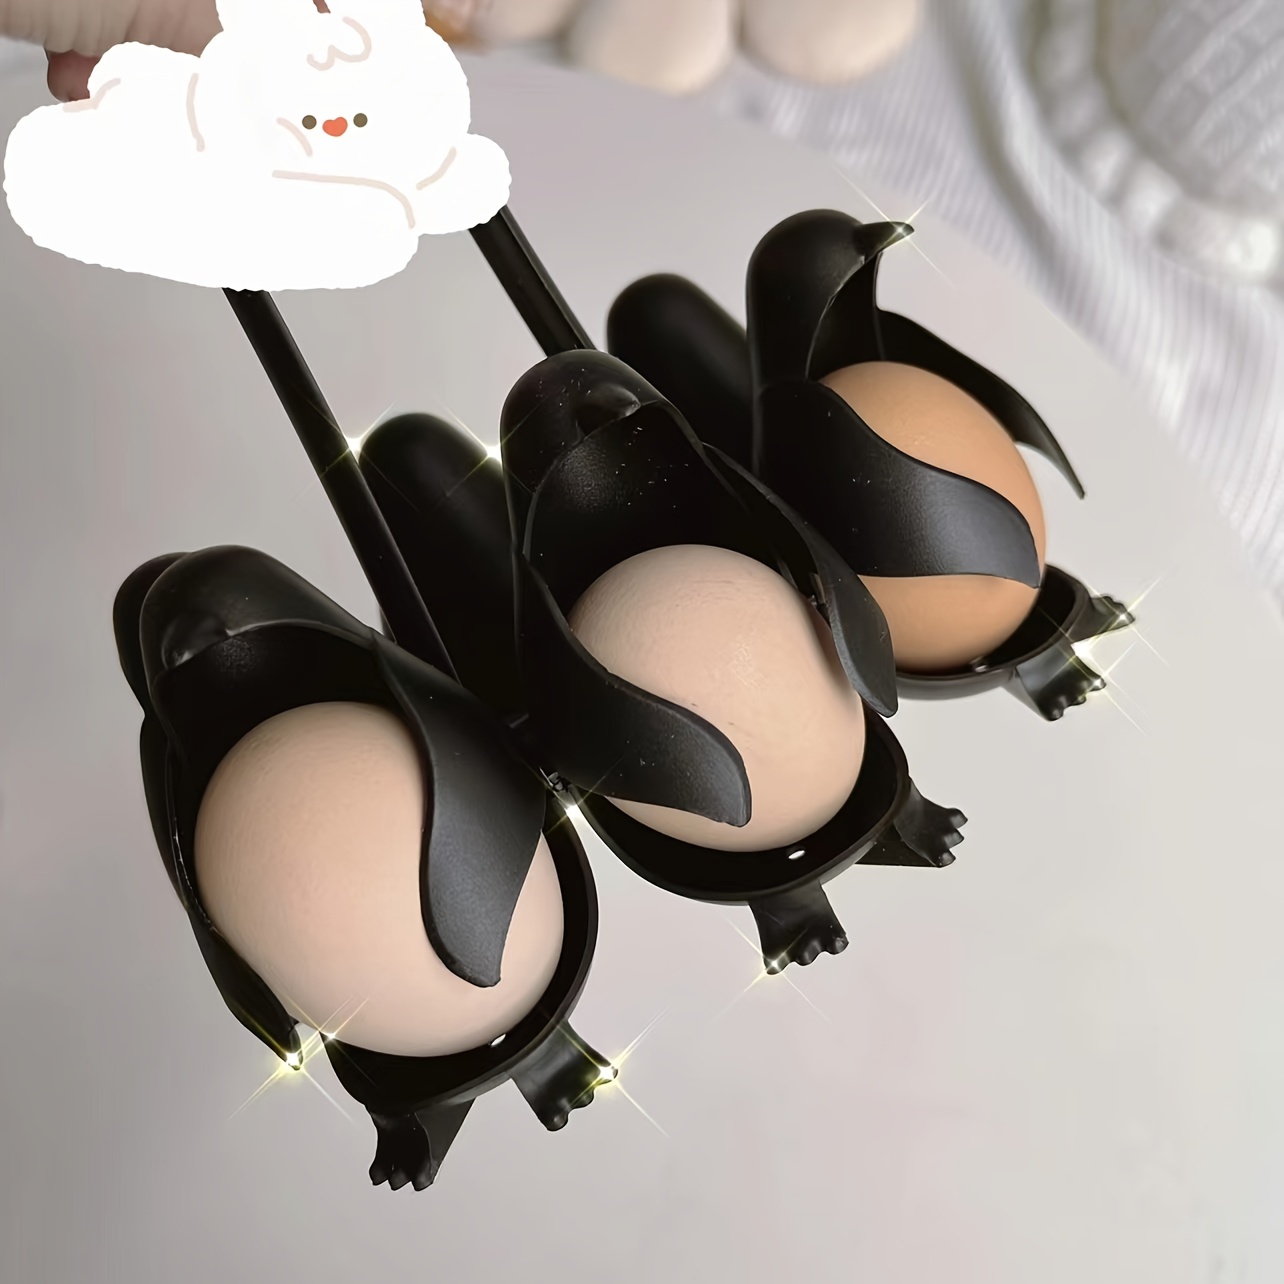 Haushalts pinguin Eier kocher 6 Gürtel langer Griff Anti